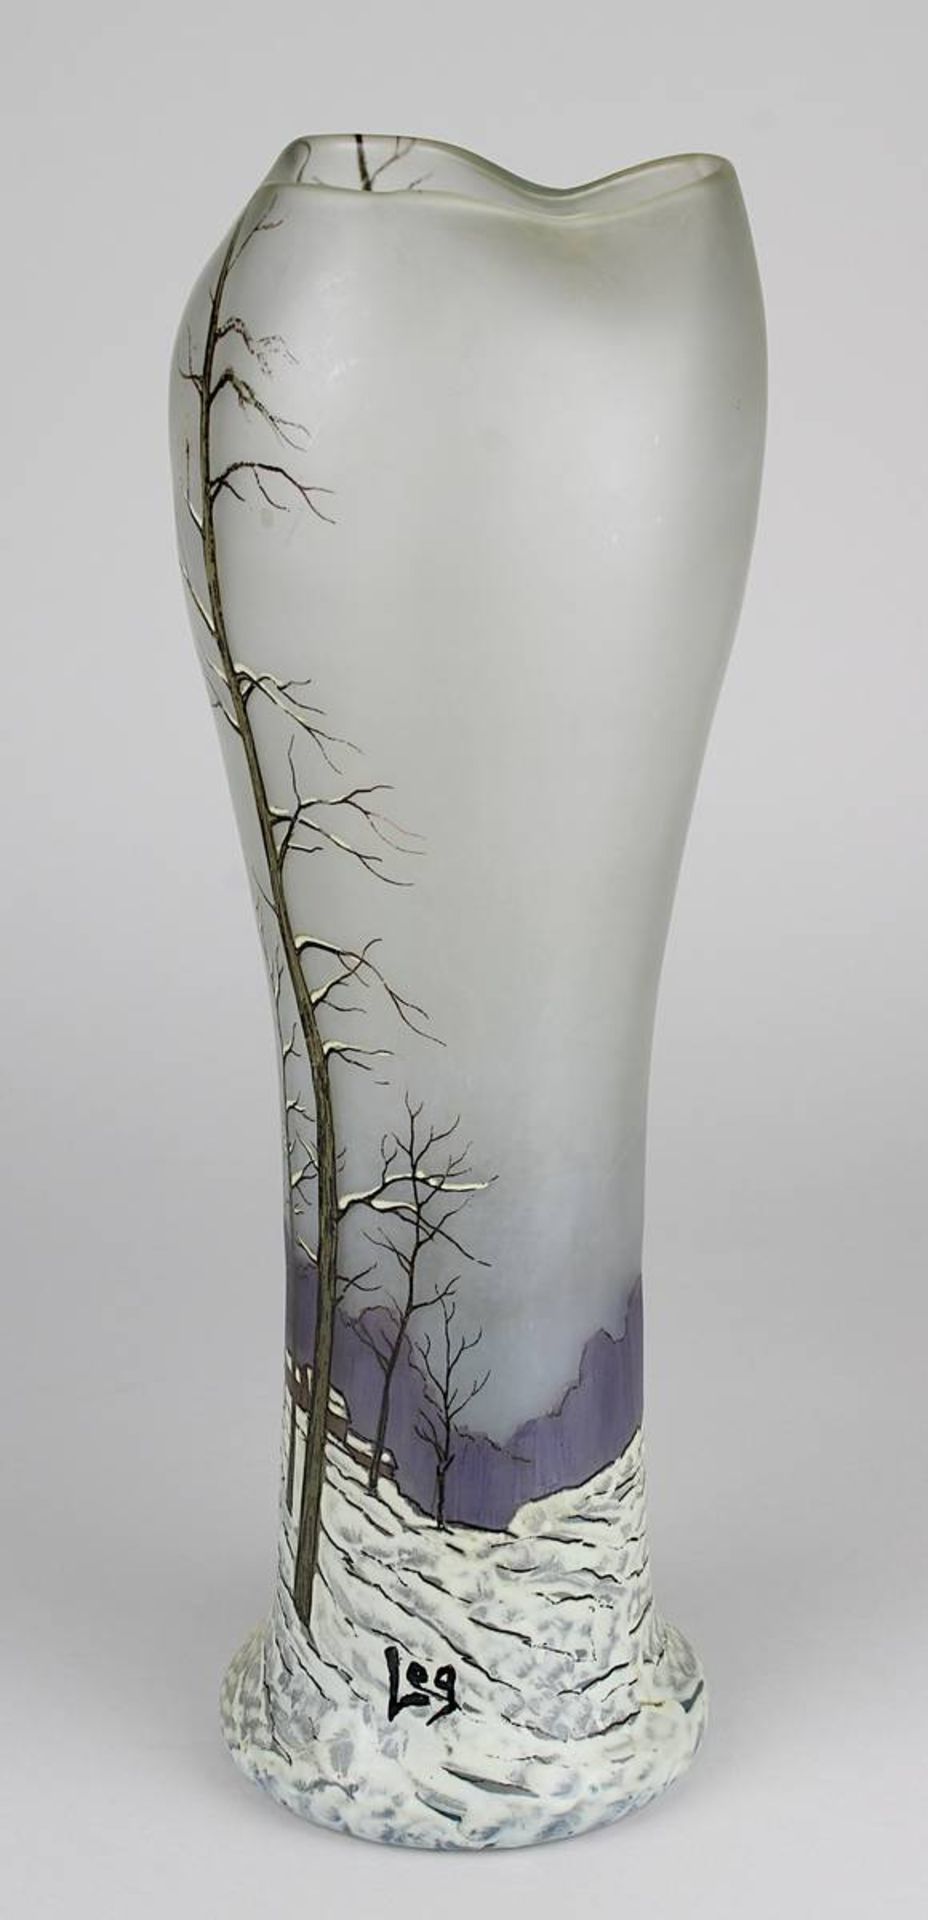 Große Jugendstil Legras-Vase, Legras St. Denise et Pantin um 1900, hoher Klarglaskorpus mit in Email - Bild 3 aus 3